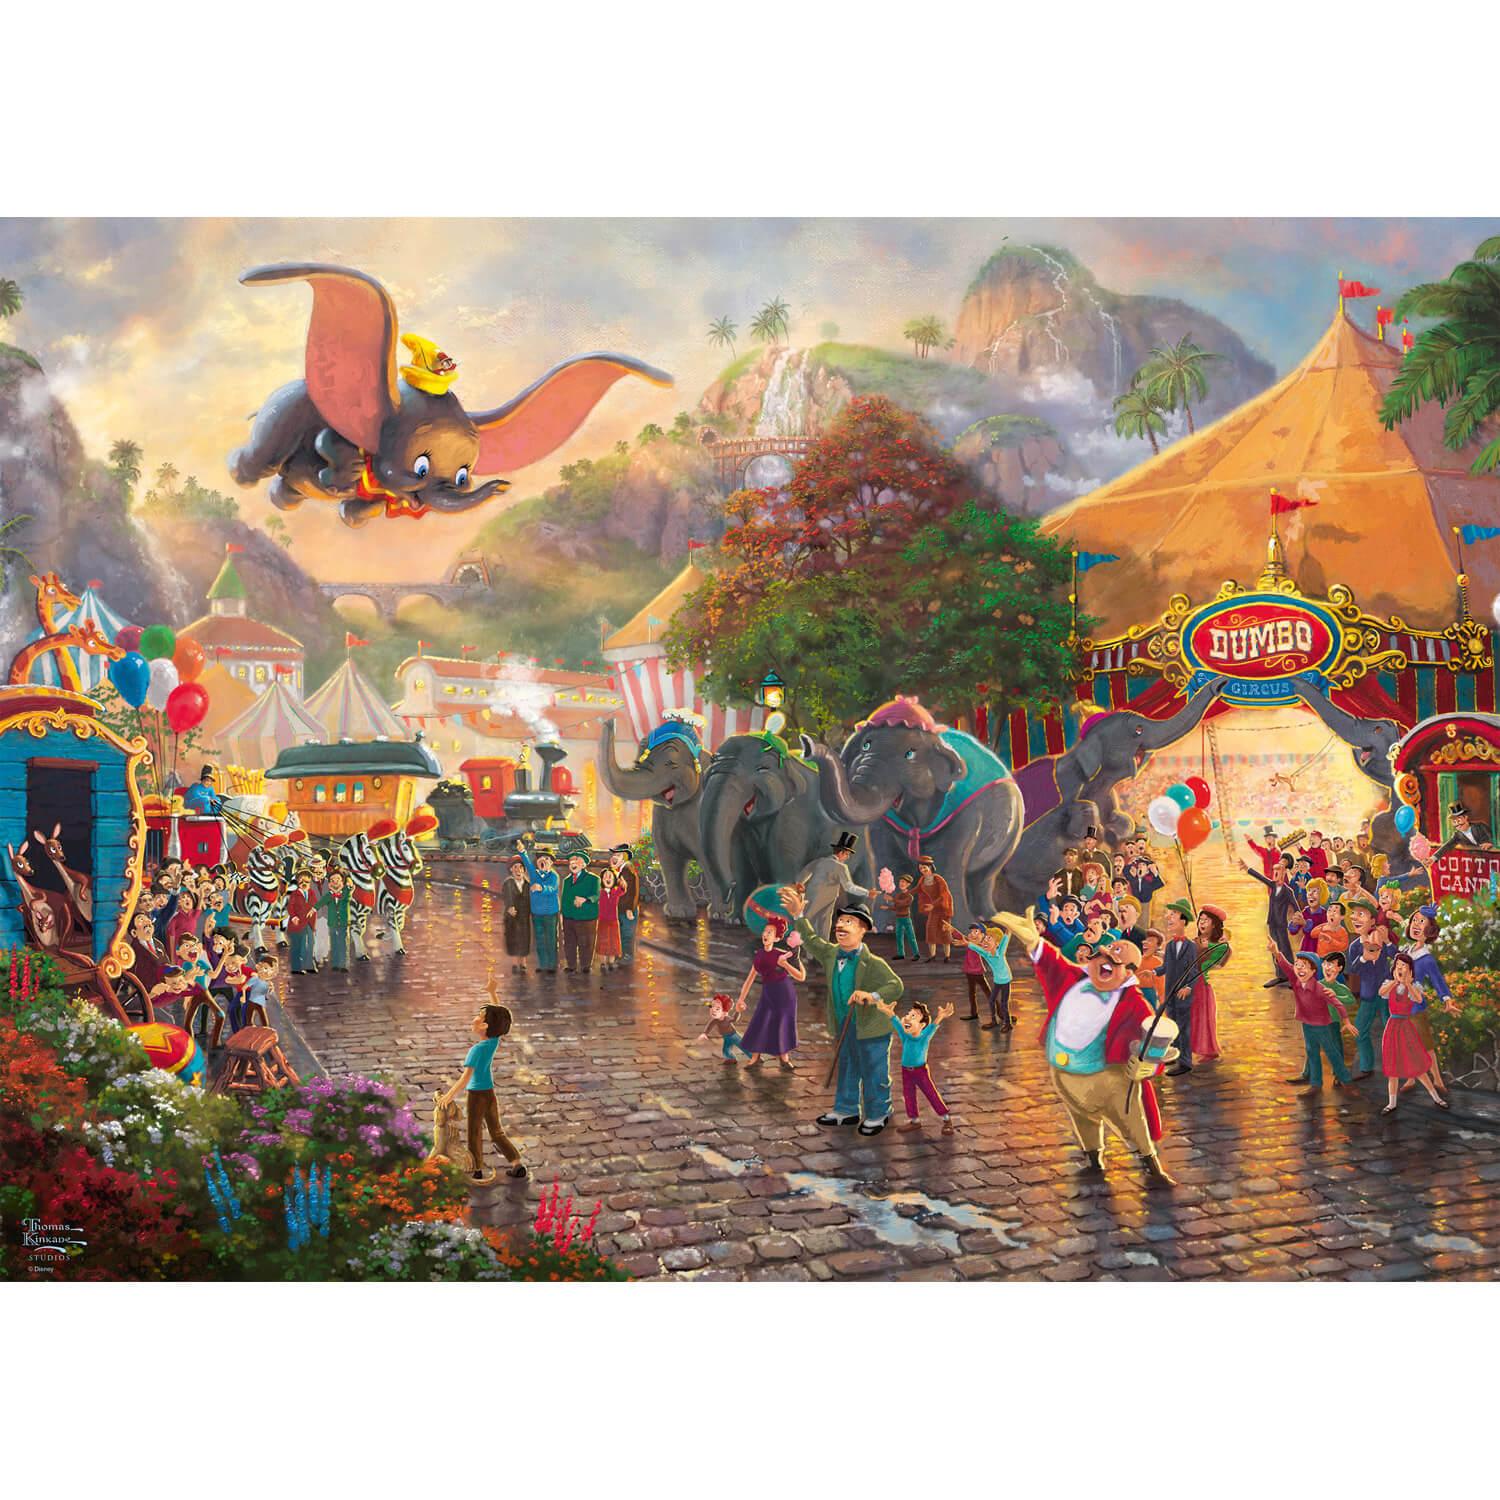 1000 pieces puzzle: Thomas Kinkade : Dumbo, Disney - Schmidt